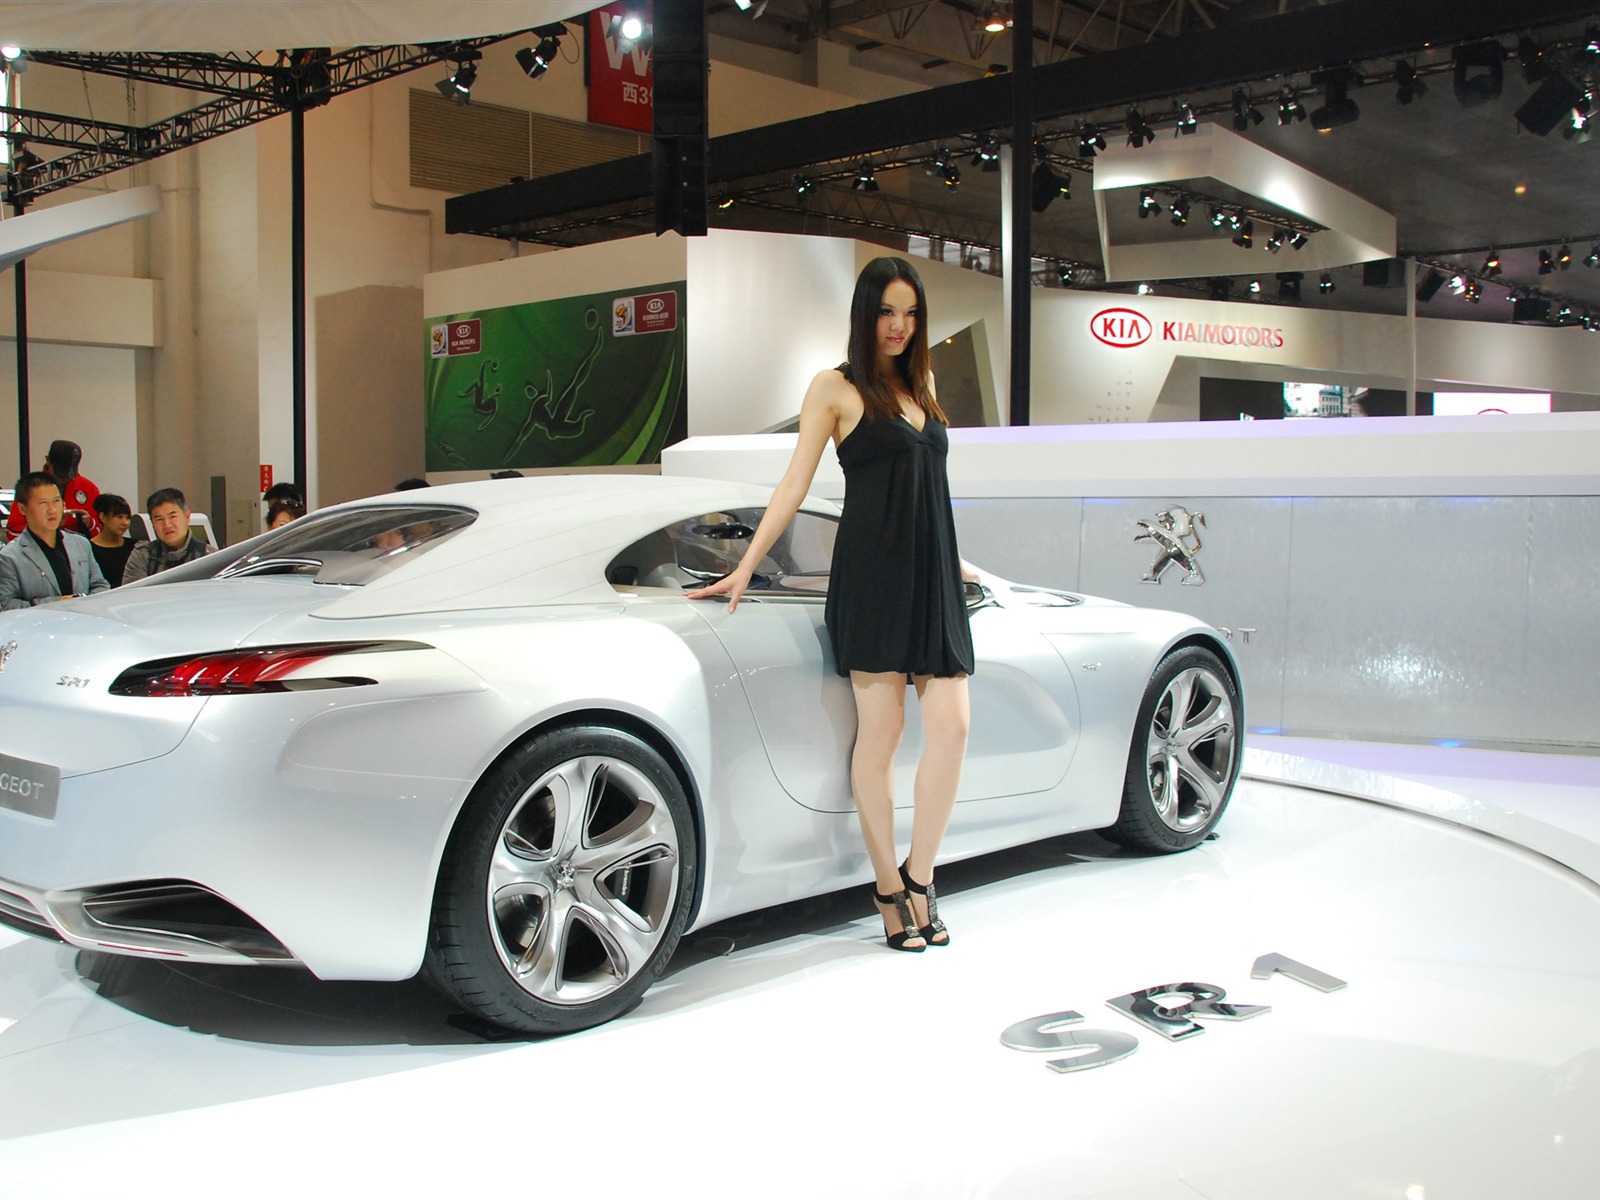 2010北京国际车展(二) (z321x123作品)31 - 1600x1200